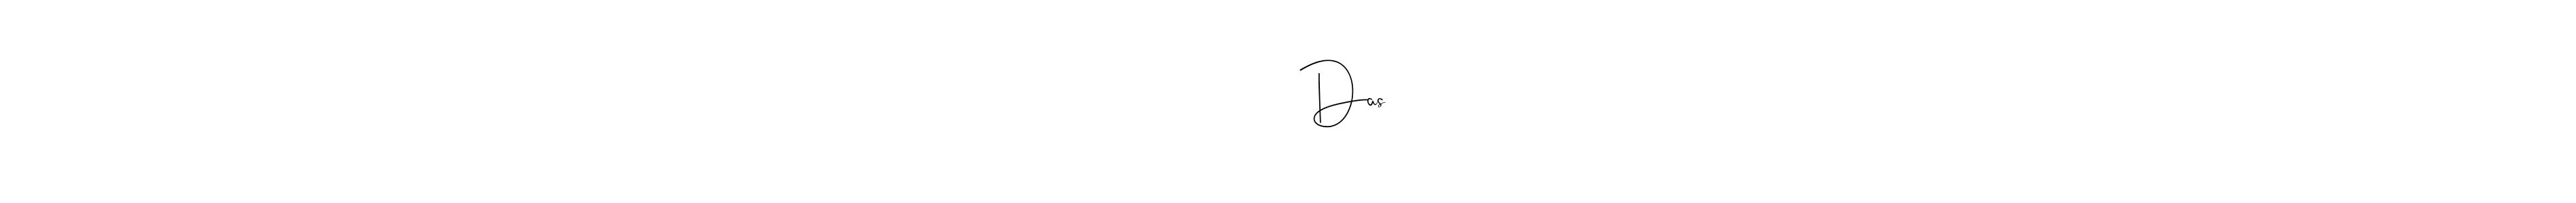 অভিষেক কুমার Das stylish signature style. Best Handwritten Sign (Andilay-7BmLP) for my name. Handwritten Signature Collection Ideas for my name অভিষেক কুমার Das. অভিষেক কুমার Das signature style 4 images and pictures png